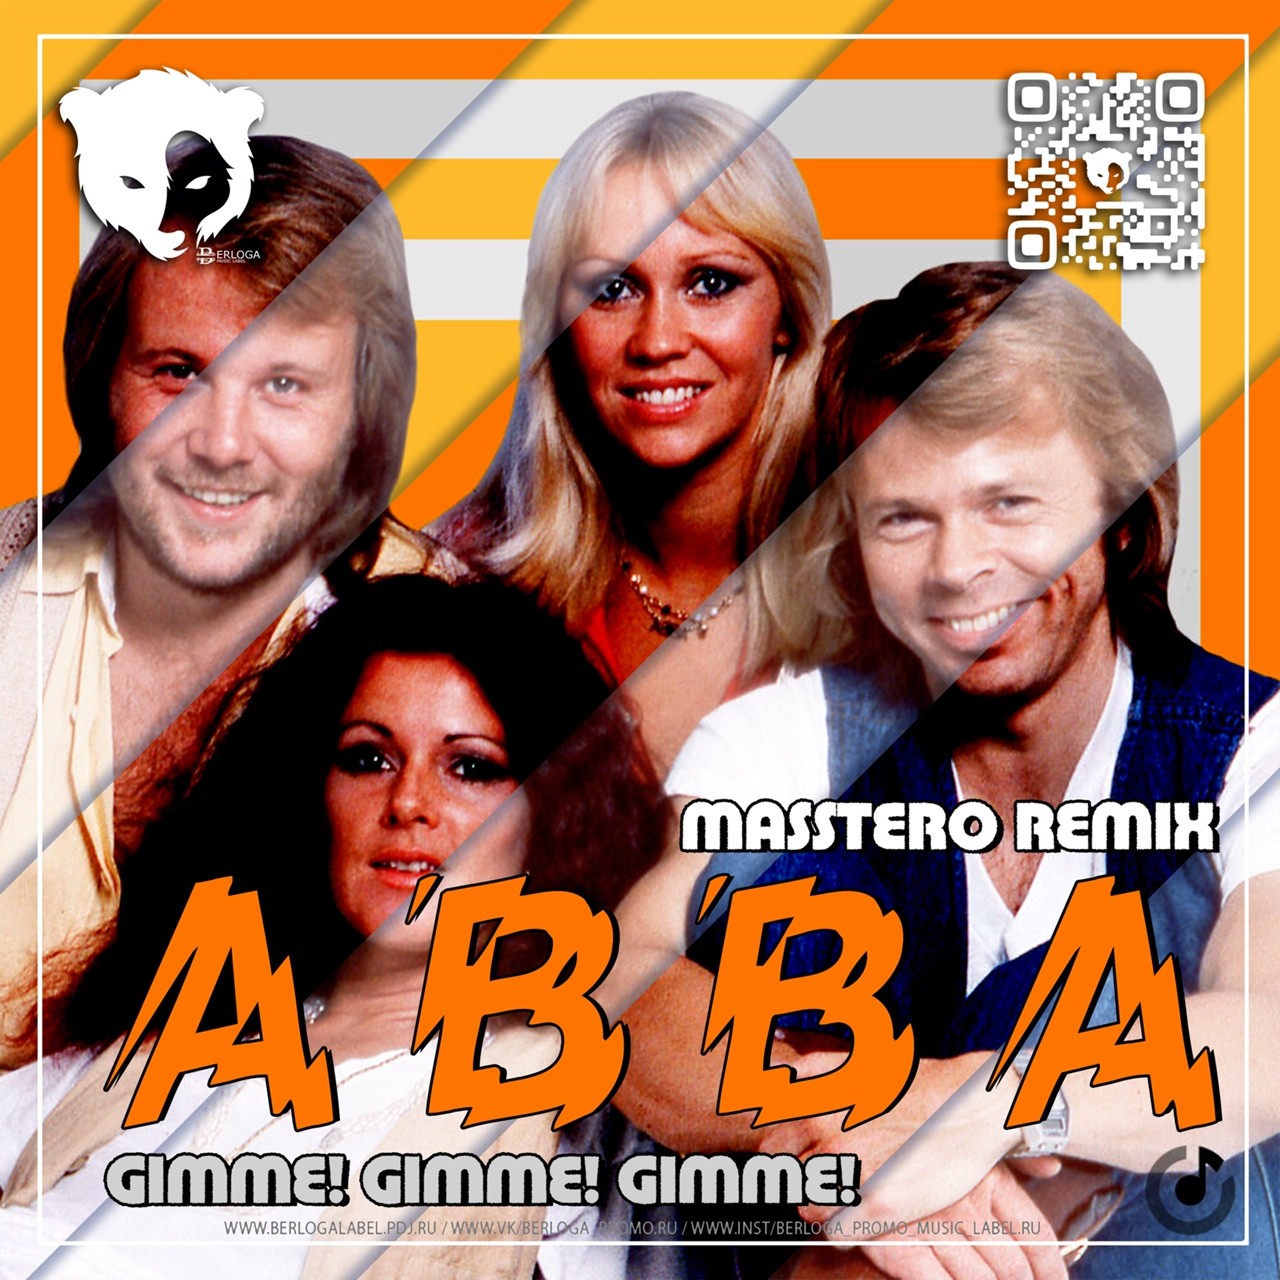 Abba gimme gimme gimme remix. ABBA Gimme Gimme Gimme. Gimme Gimme Gimme reset Remix Bass.